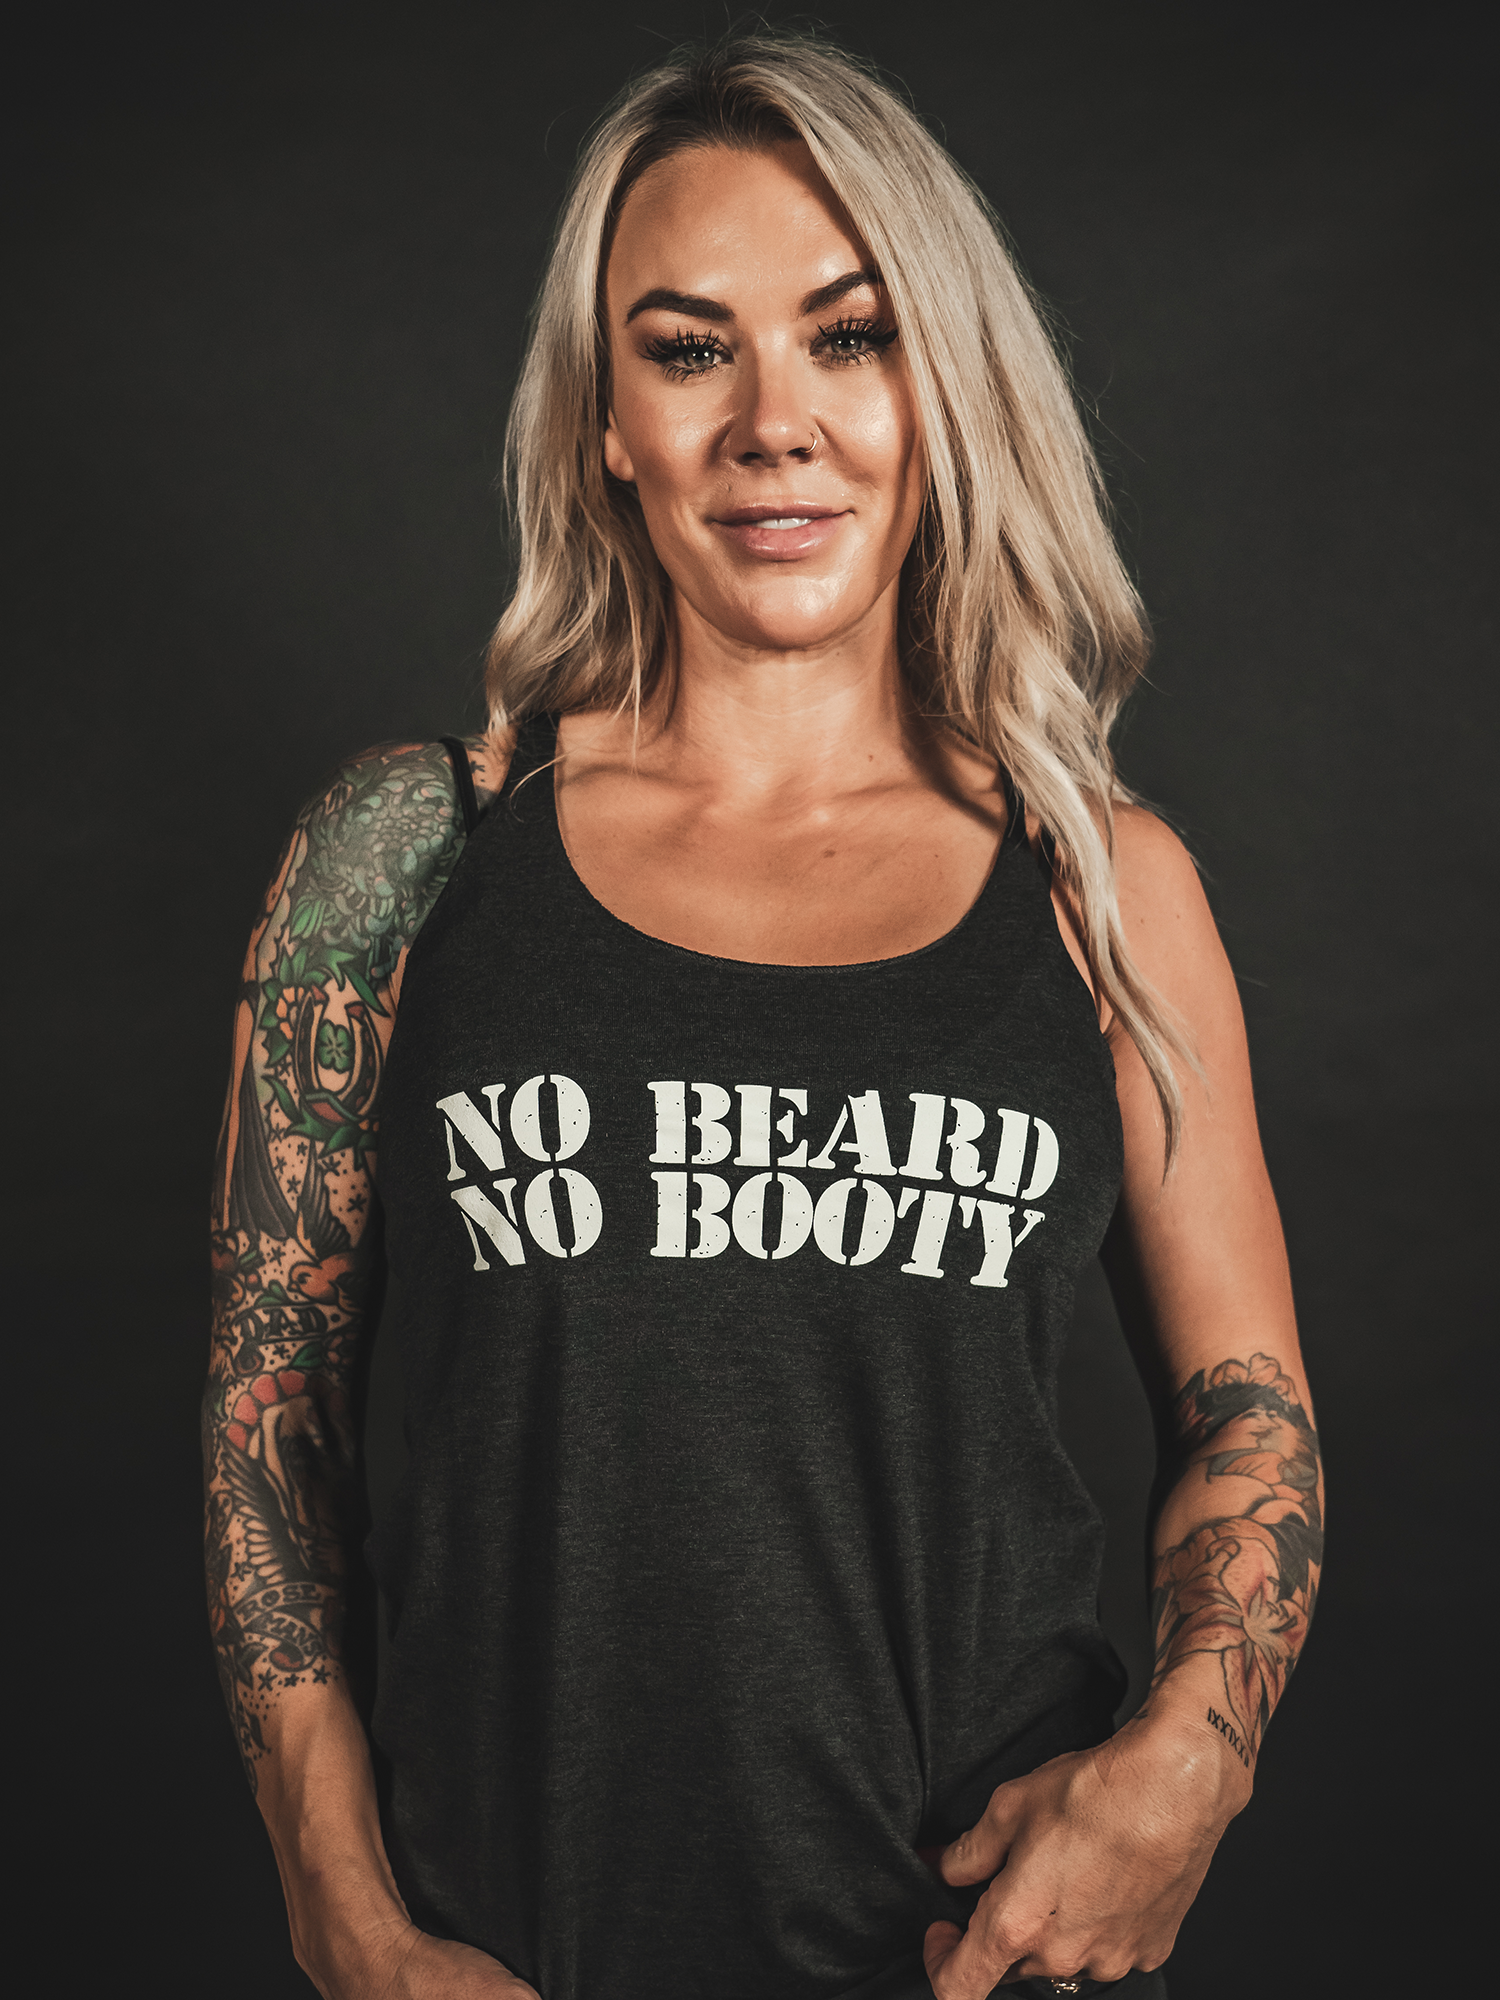 NO BEARD NO BOOTY Womens Tank - Lions Not Sheep ®